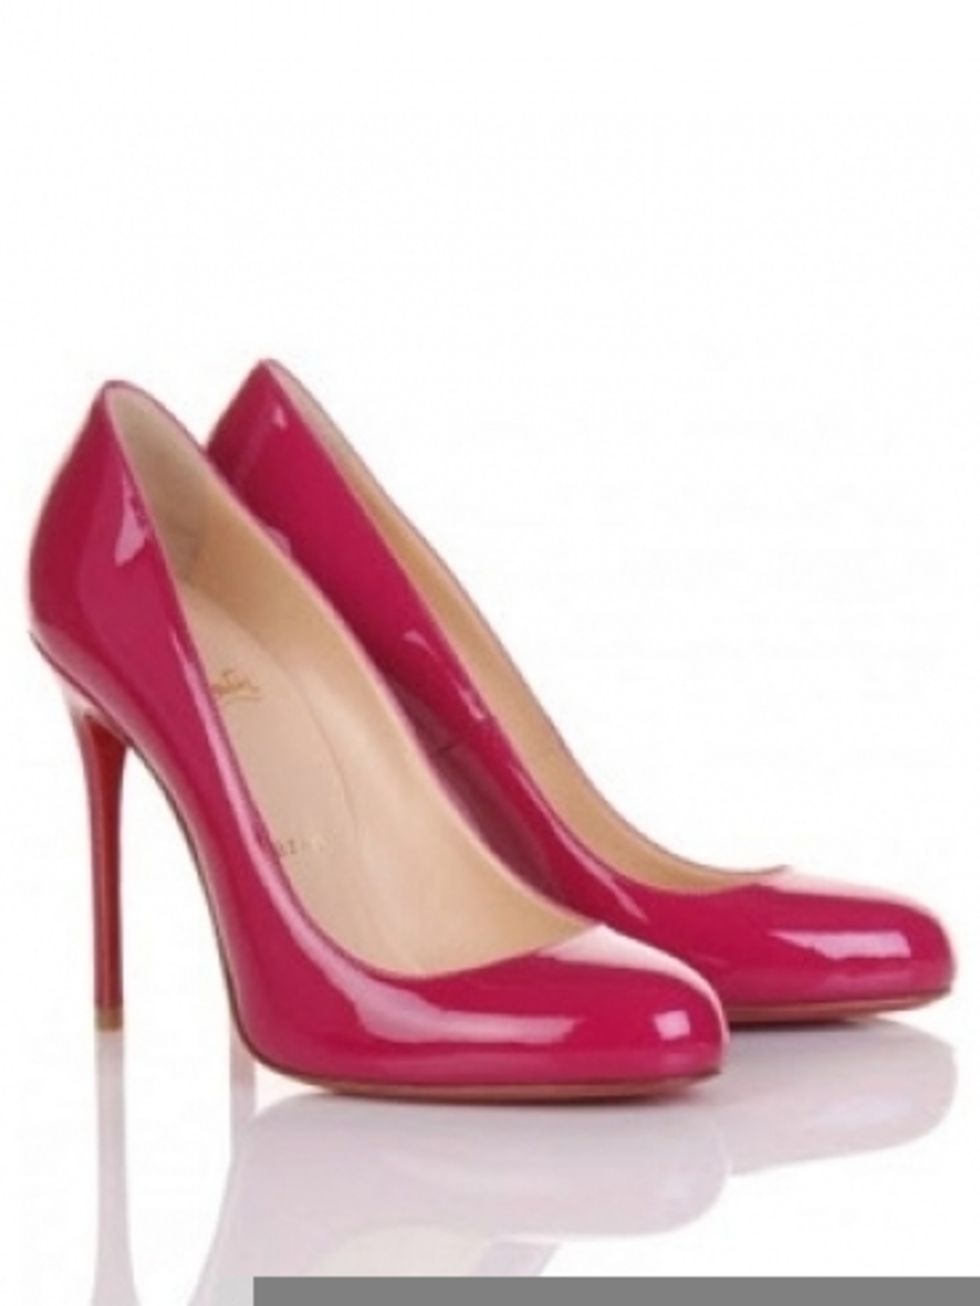 Footwear, High heels, Brown, Red, Pink, Basic pump, Sandal, Tan, Maroon, Carmine, 